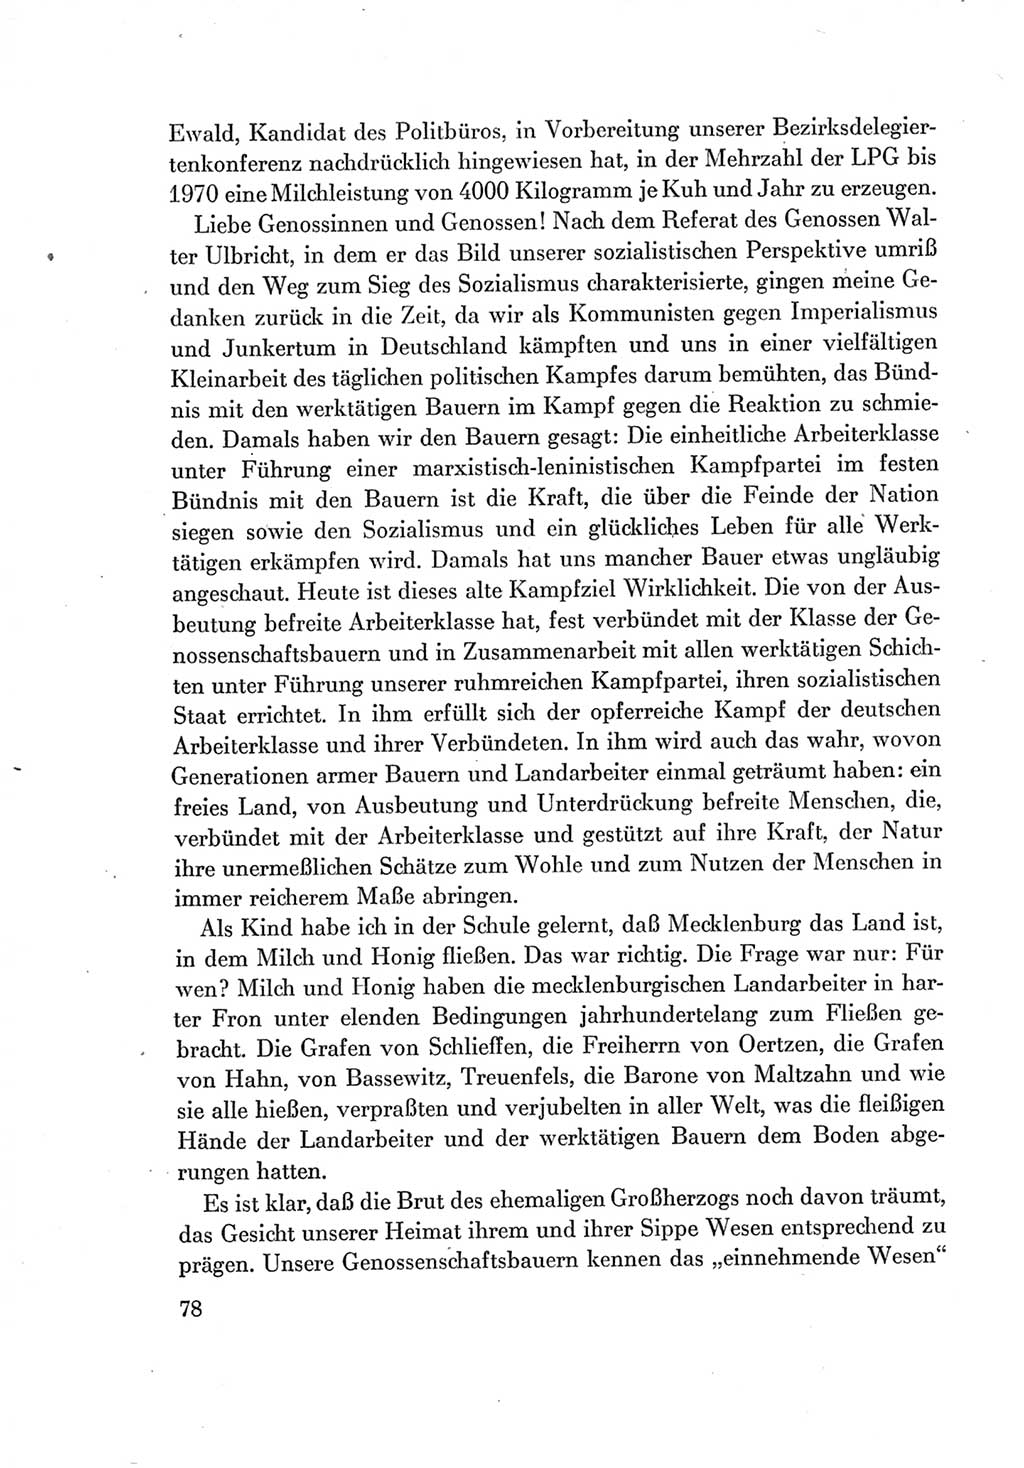 Protokoll der Verhandlungen des Ⅶ. Parteitages der Sozialistischen Einheitspartei Deutschlands (SED) [Deutsche Demokratische Republik (DDR)] 1967, Band Ⅱ, Seite 78 (Prot. Verh. Ⅶ. PT SED DDR 1967, Bd. Ⅱ, S. 78)